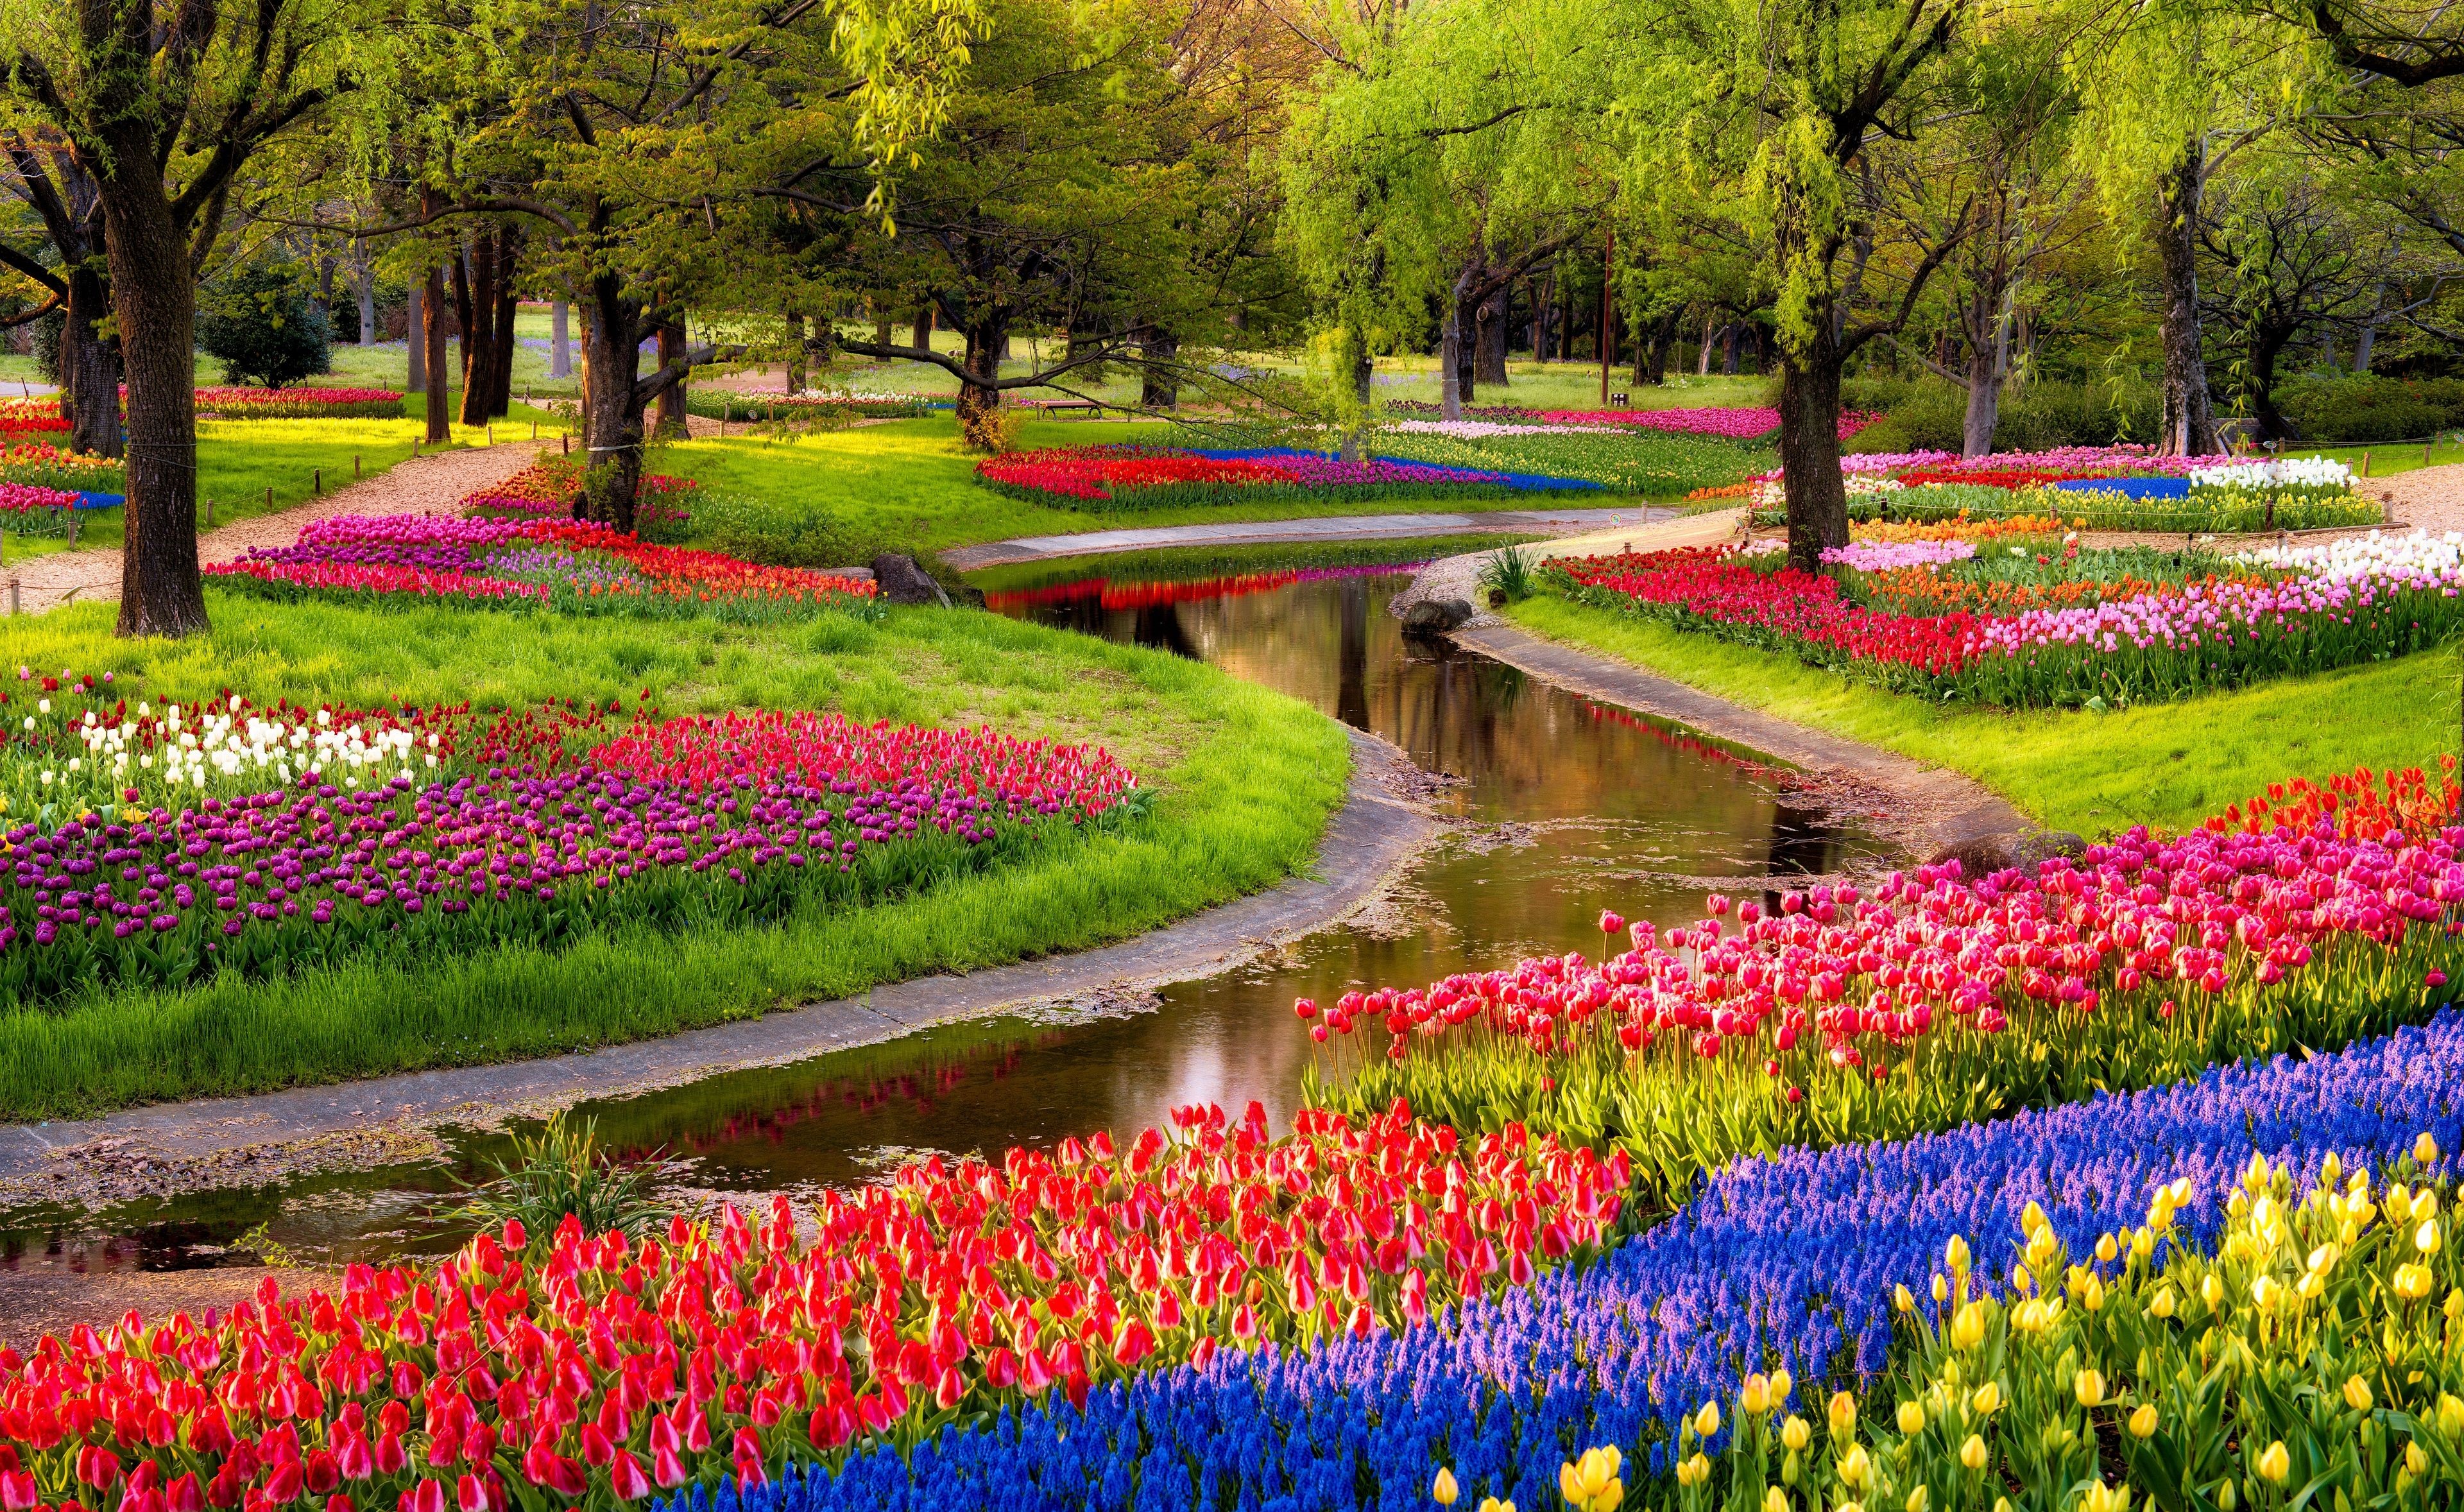 تصویر پرطرفدار باغ گل رنگارنگ در پارک در فصل زیبای بهار